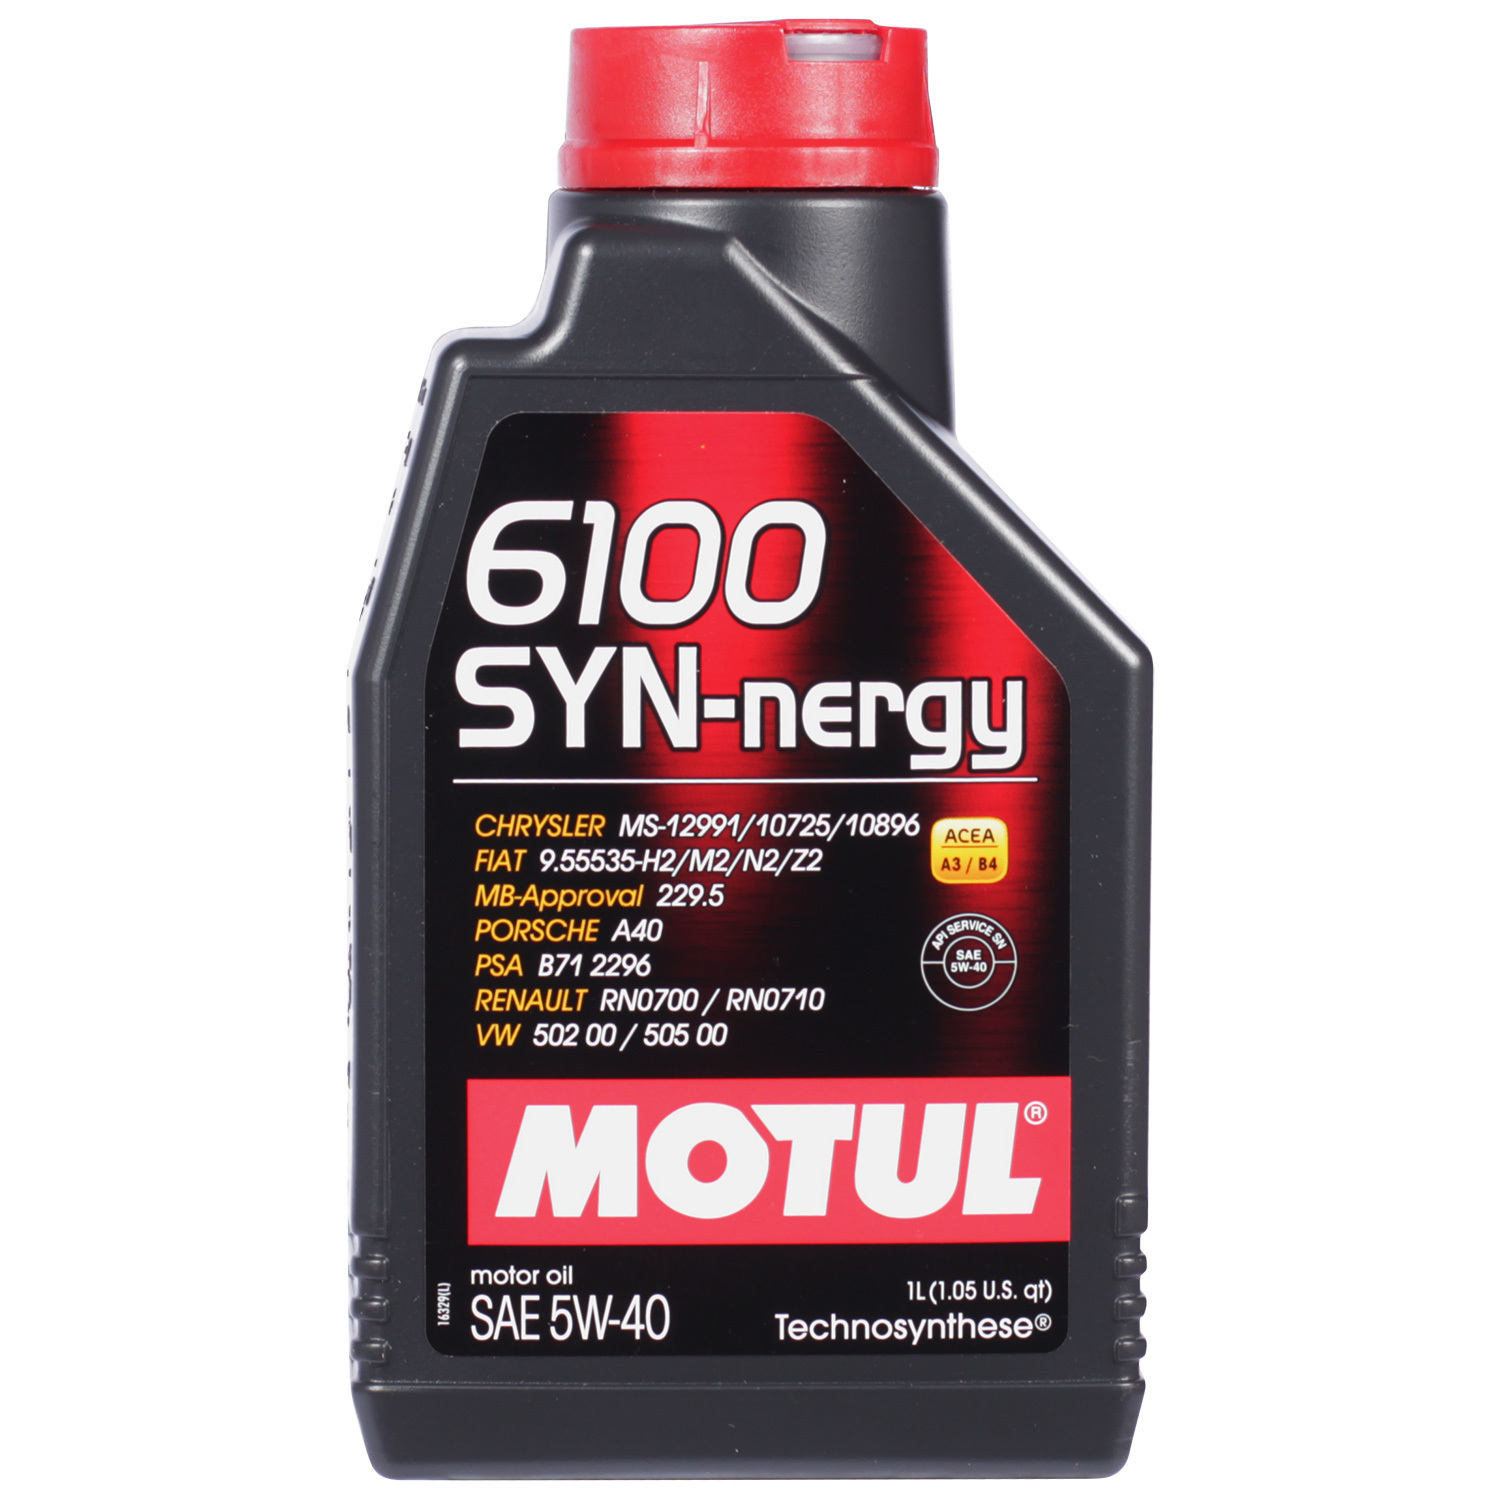 Motul Моторное масло Motul 6100 SYN-NERGY 5W-40, 1 л motul моторное масло motul 6100 syn clean 5w 30 5 л